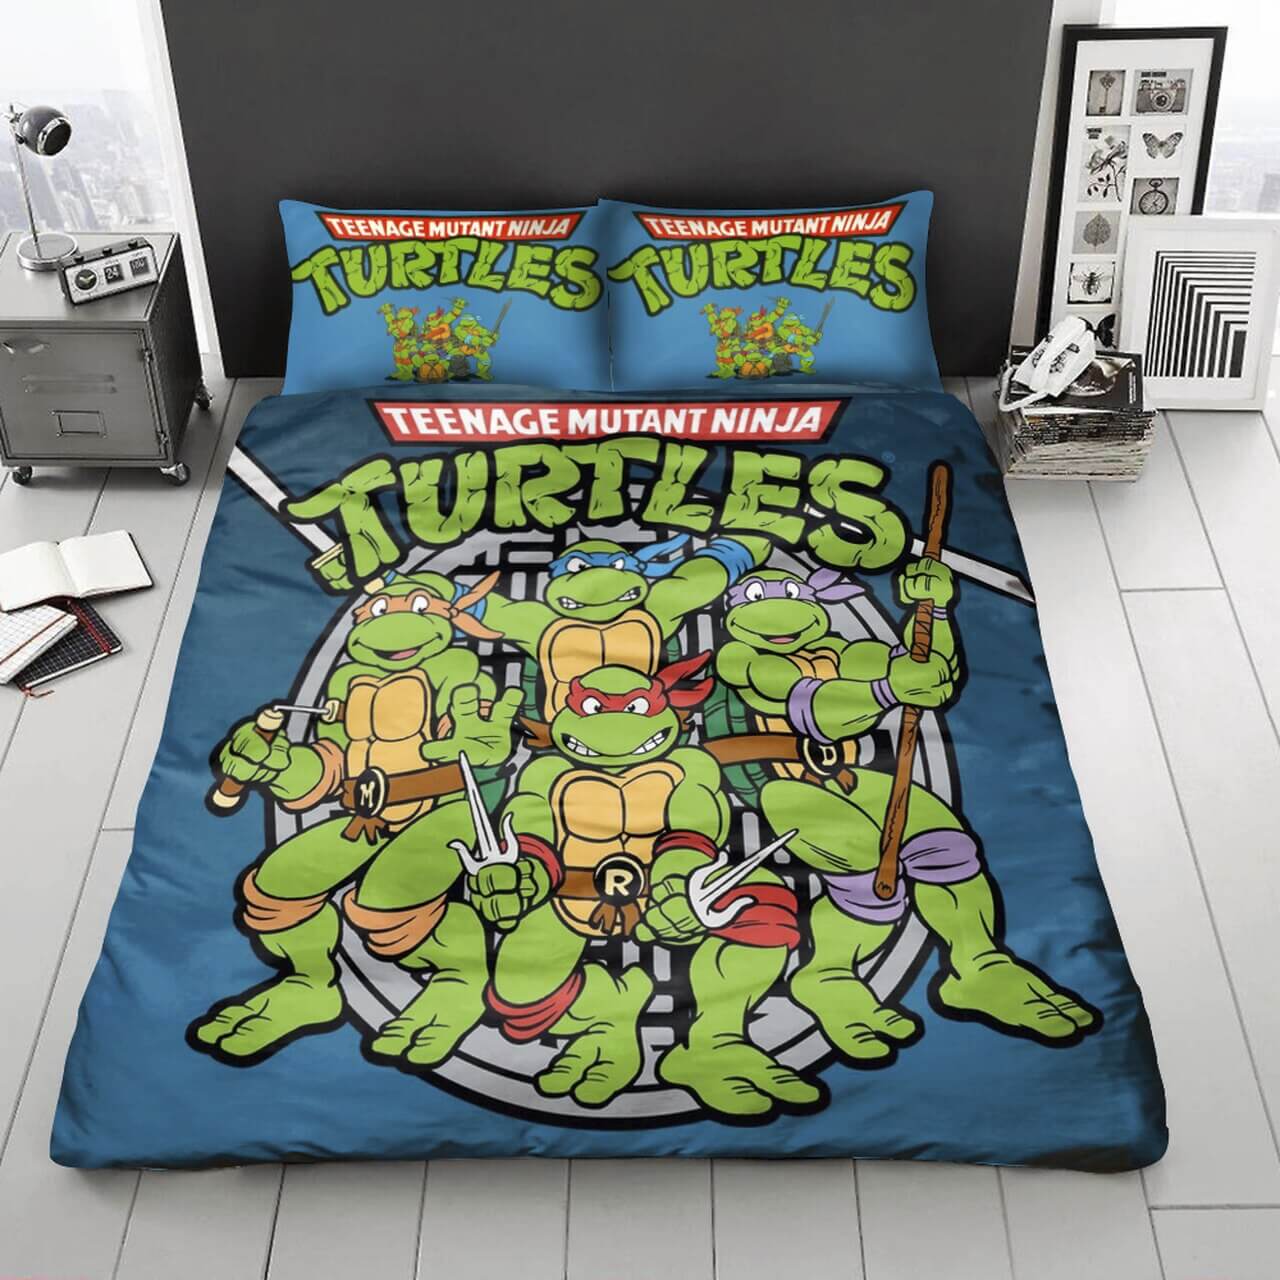 Cozy Ninja Turtles bedroom